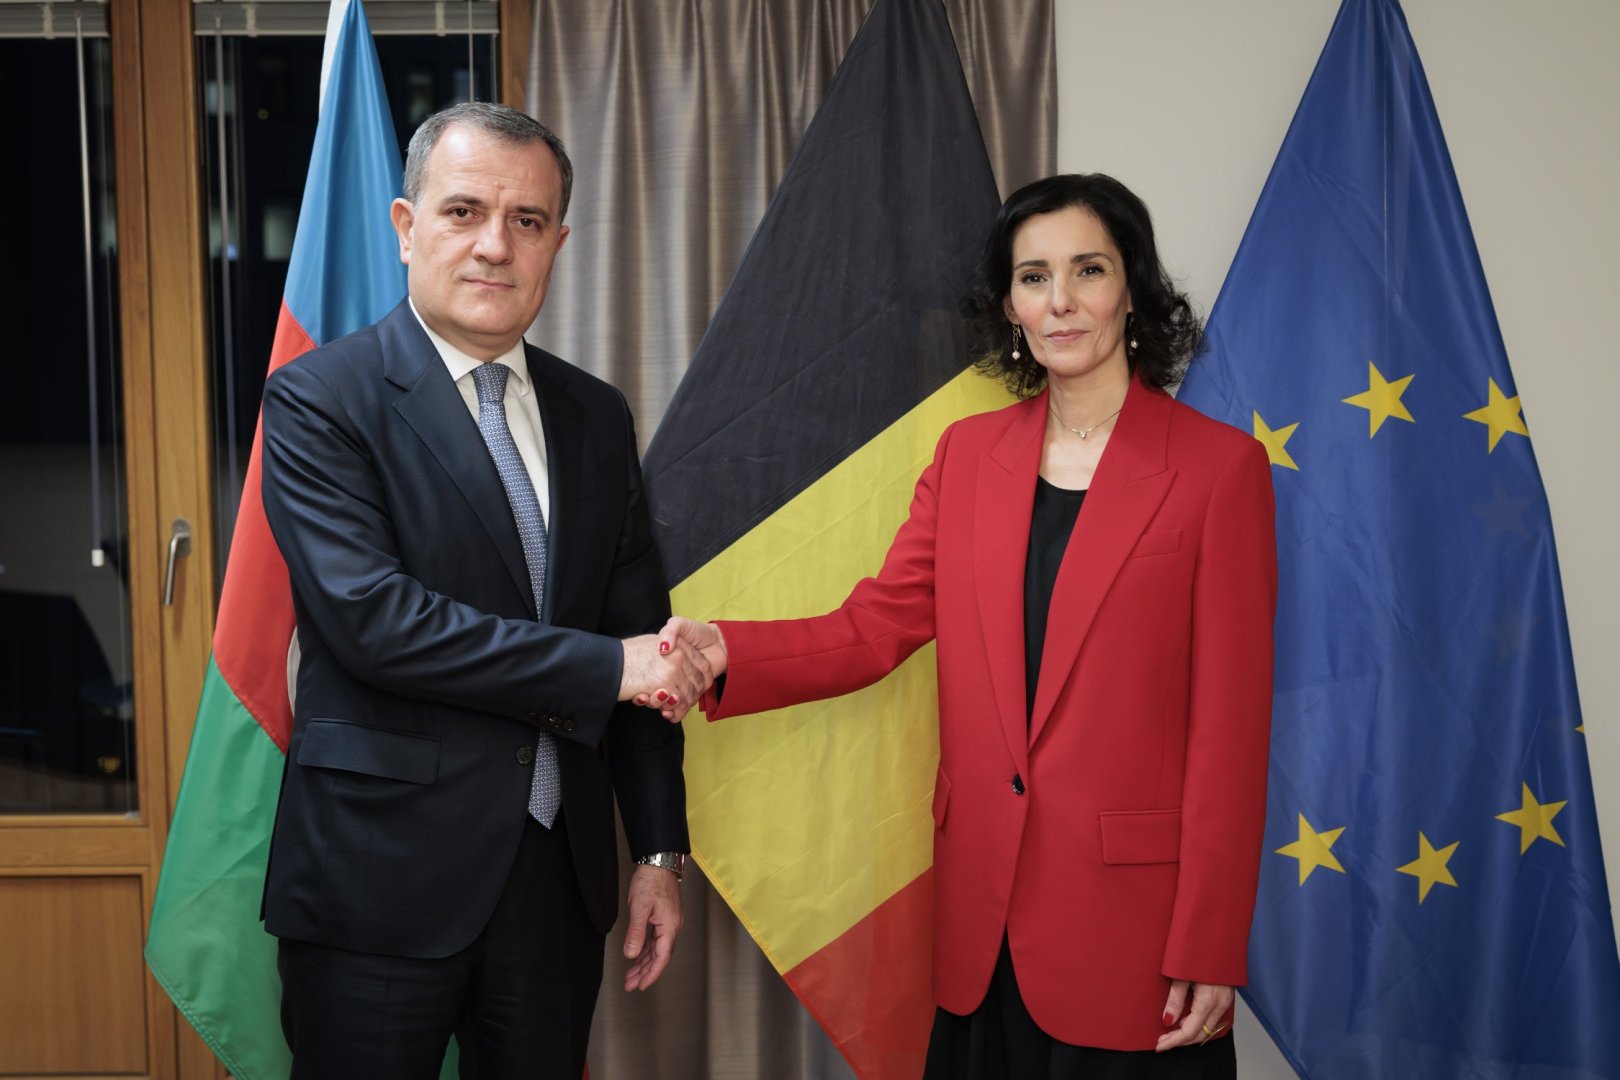 Бельгия твердо поддерживает мирное урегулирование между Азербайджаном и Арменией - министр